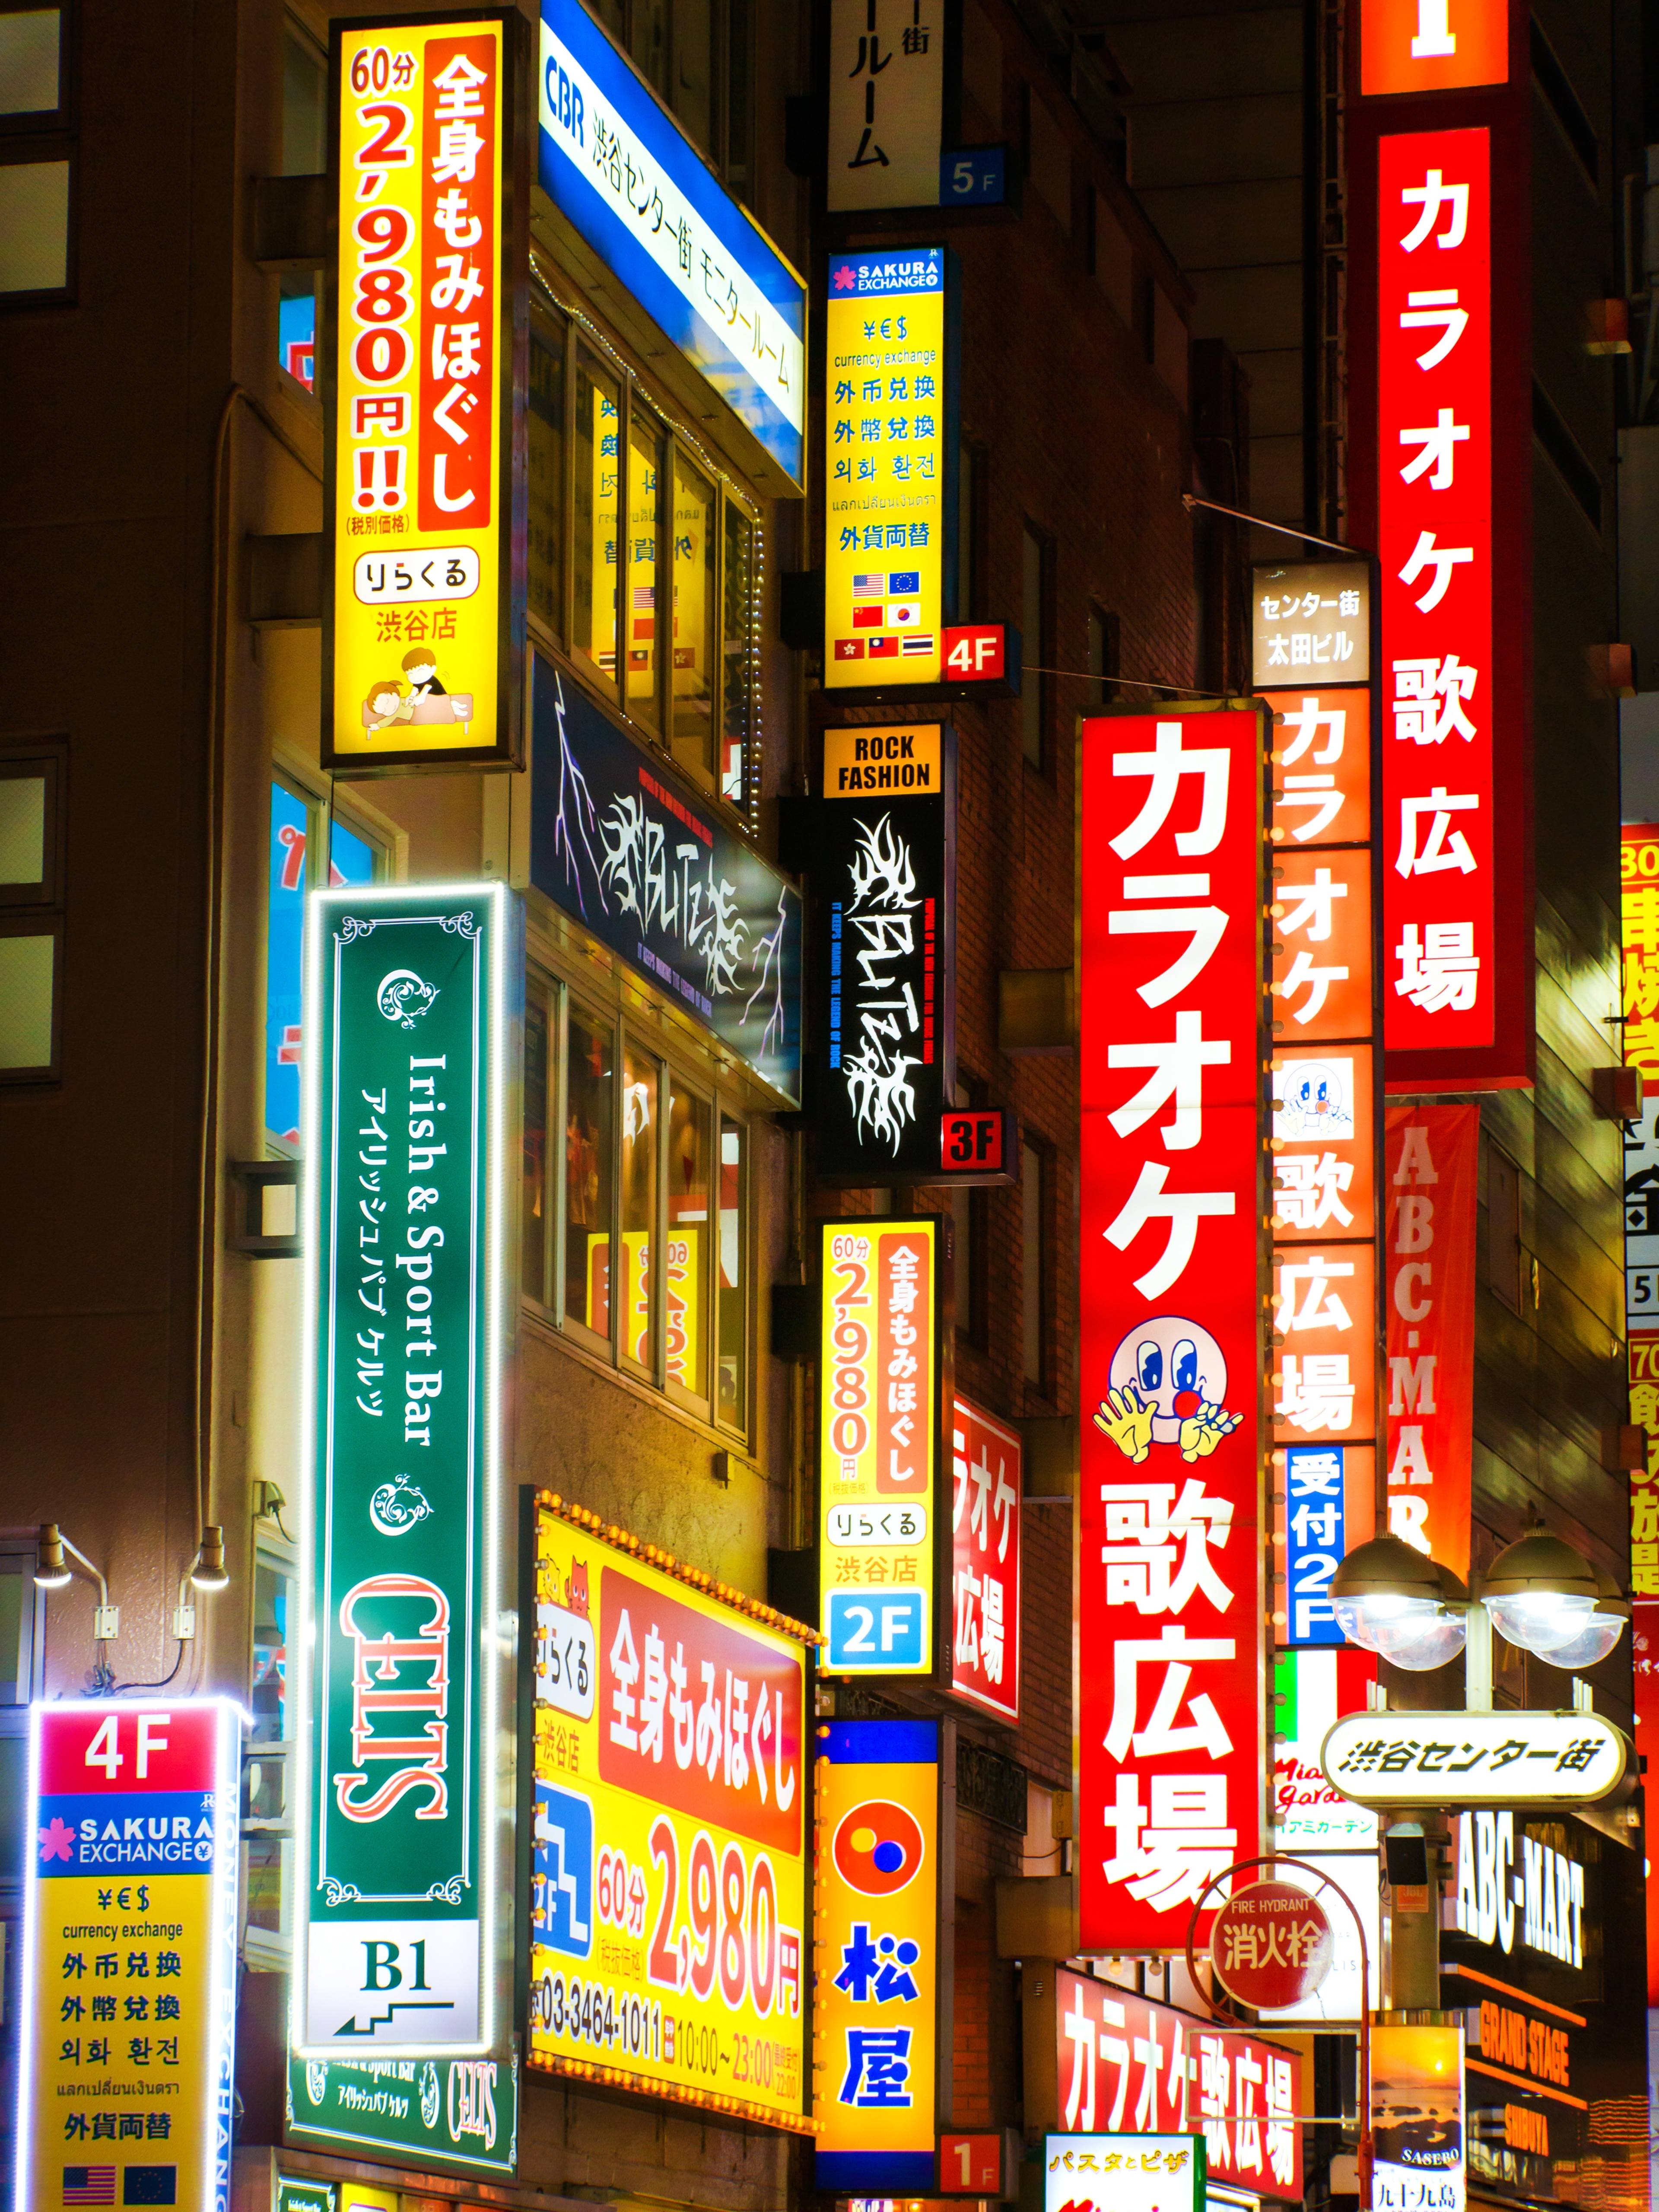 insegne illuminate di notte a tokyo